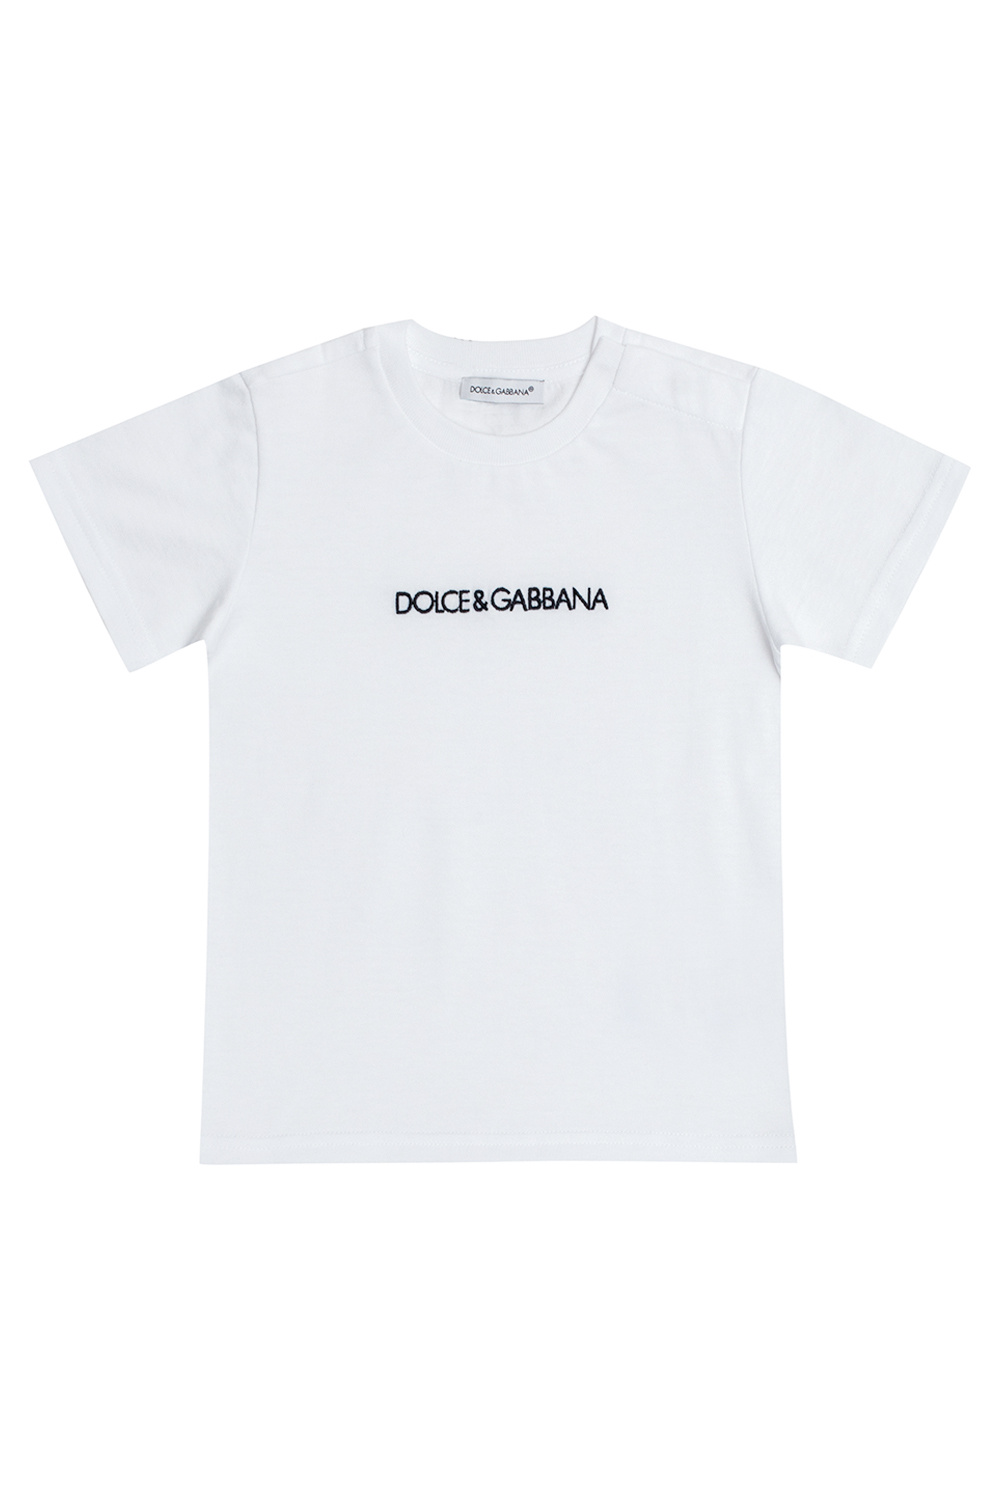 Dolce & Gabbana embroidered-logo denim shirt Logo T-shirt